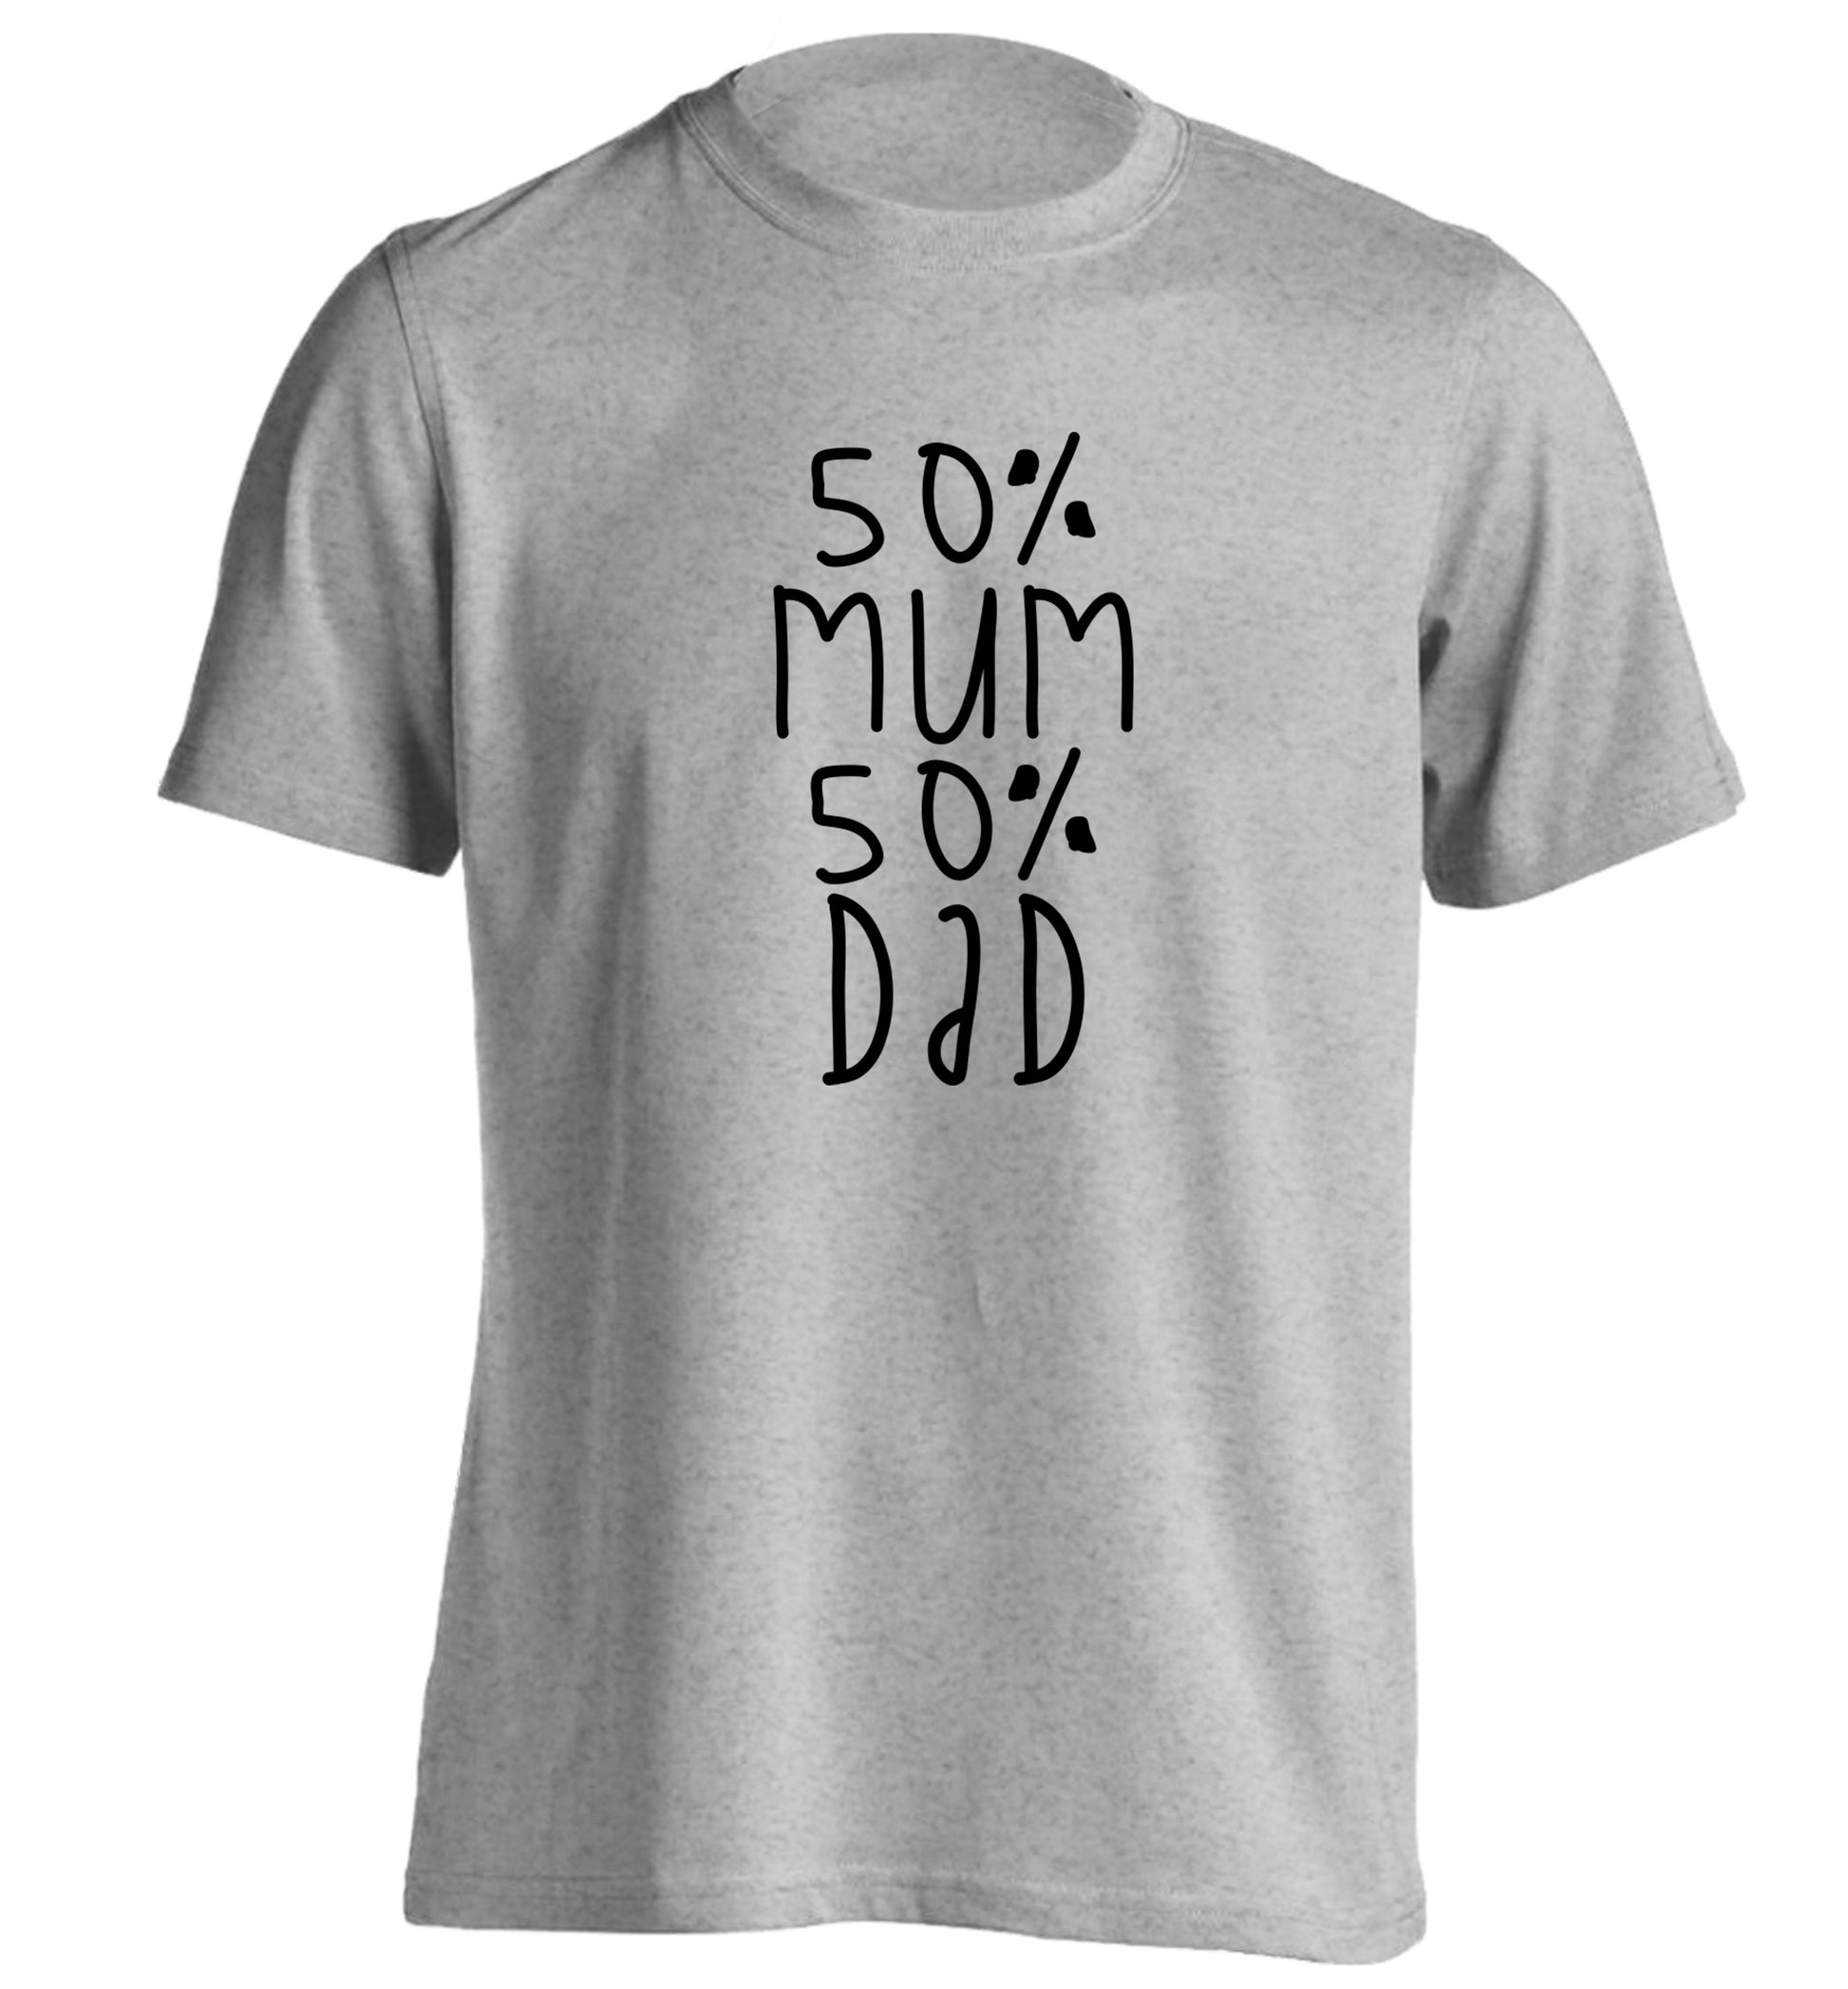 50% mum 50% dad adults unisex grey Tshirt 2XL